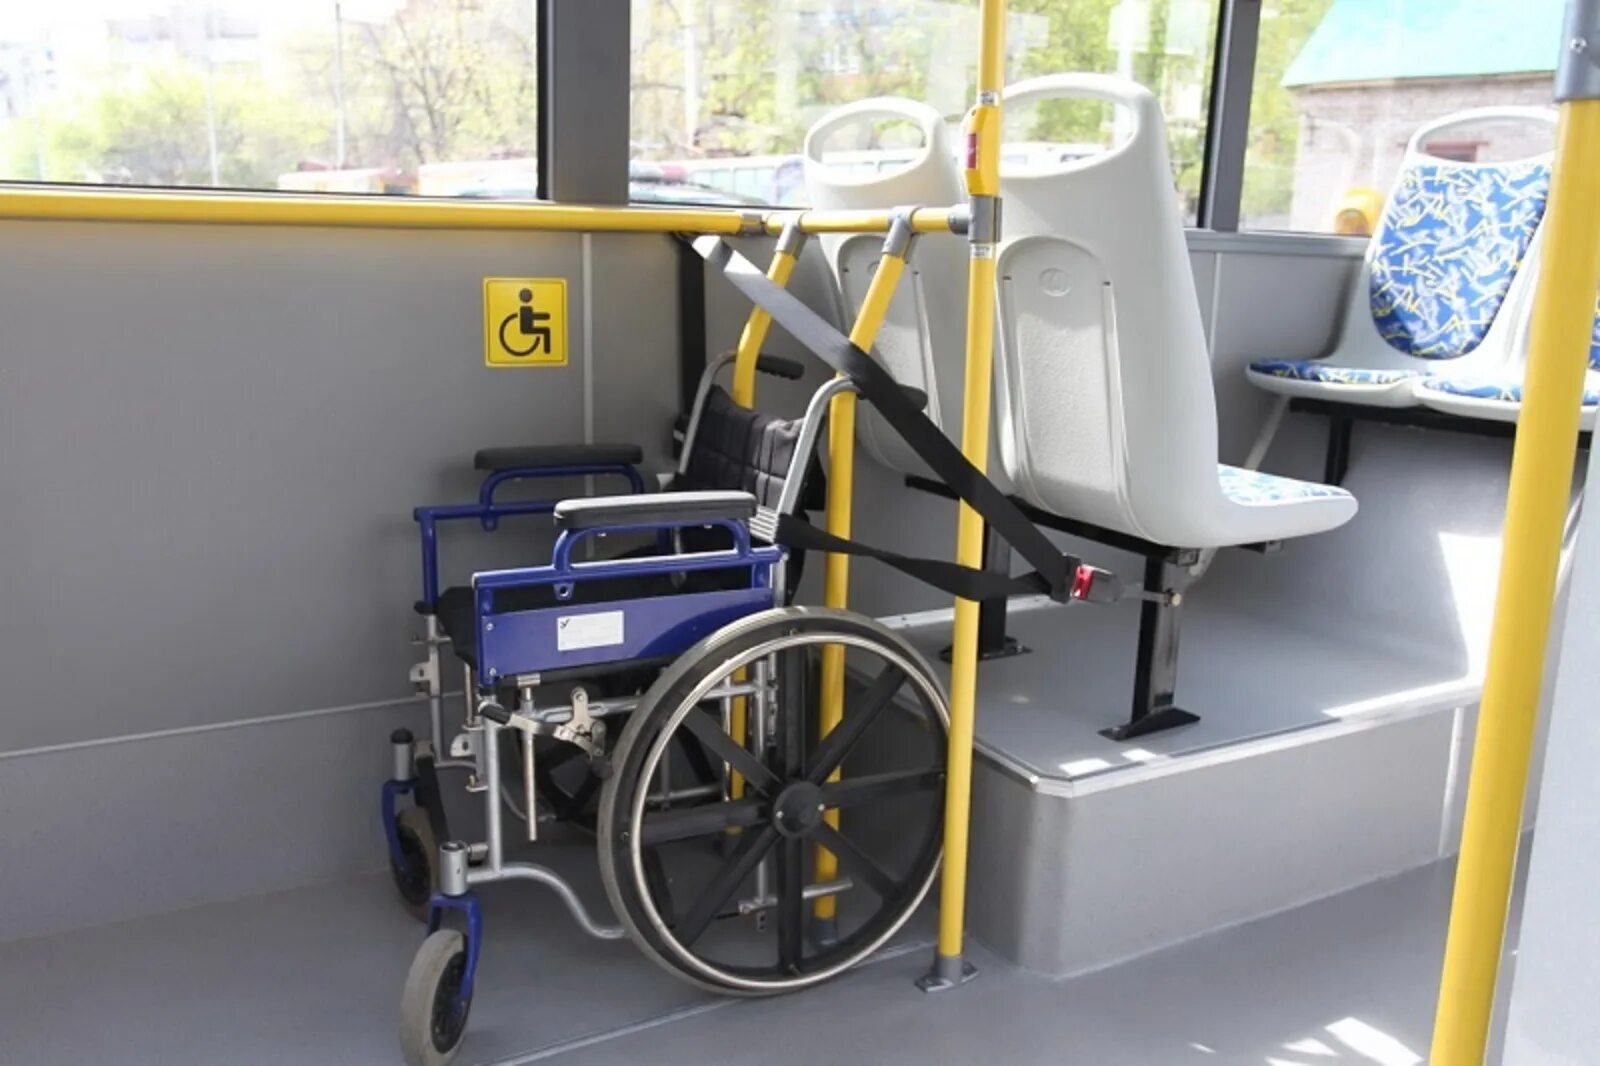 Доступность транспортных услуг для инвалидов. Автобус для инвалидов. Автобус для инвалидов колясочников. Место для инвалидной коляски в автобусе. Места для инвалидов в автобусе.